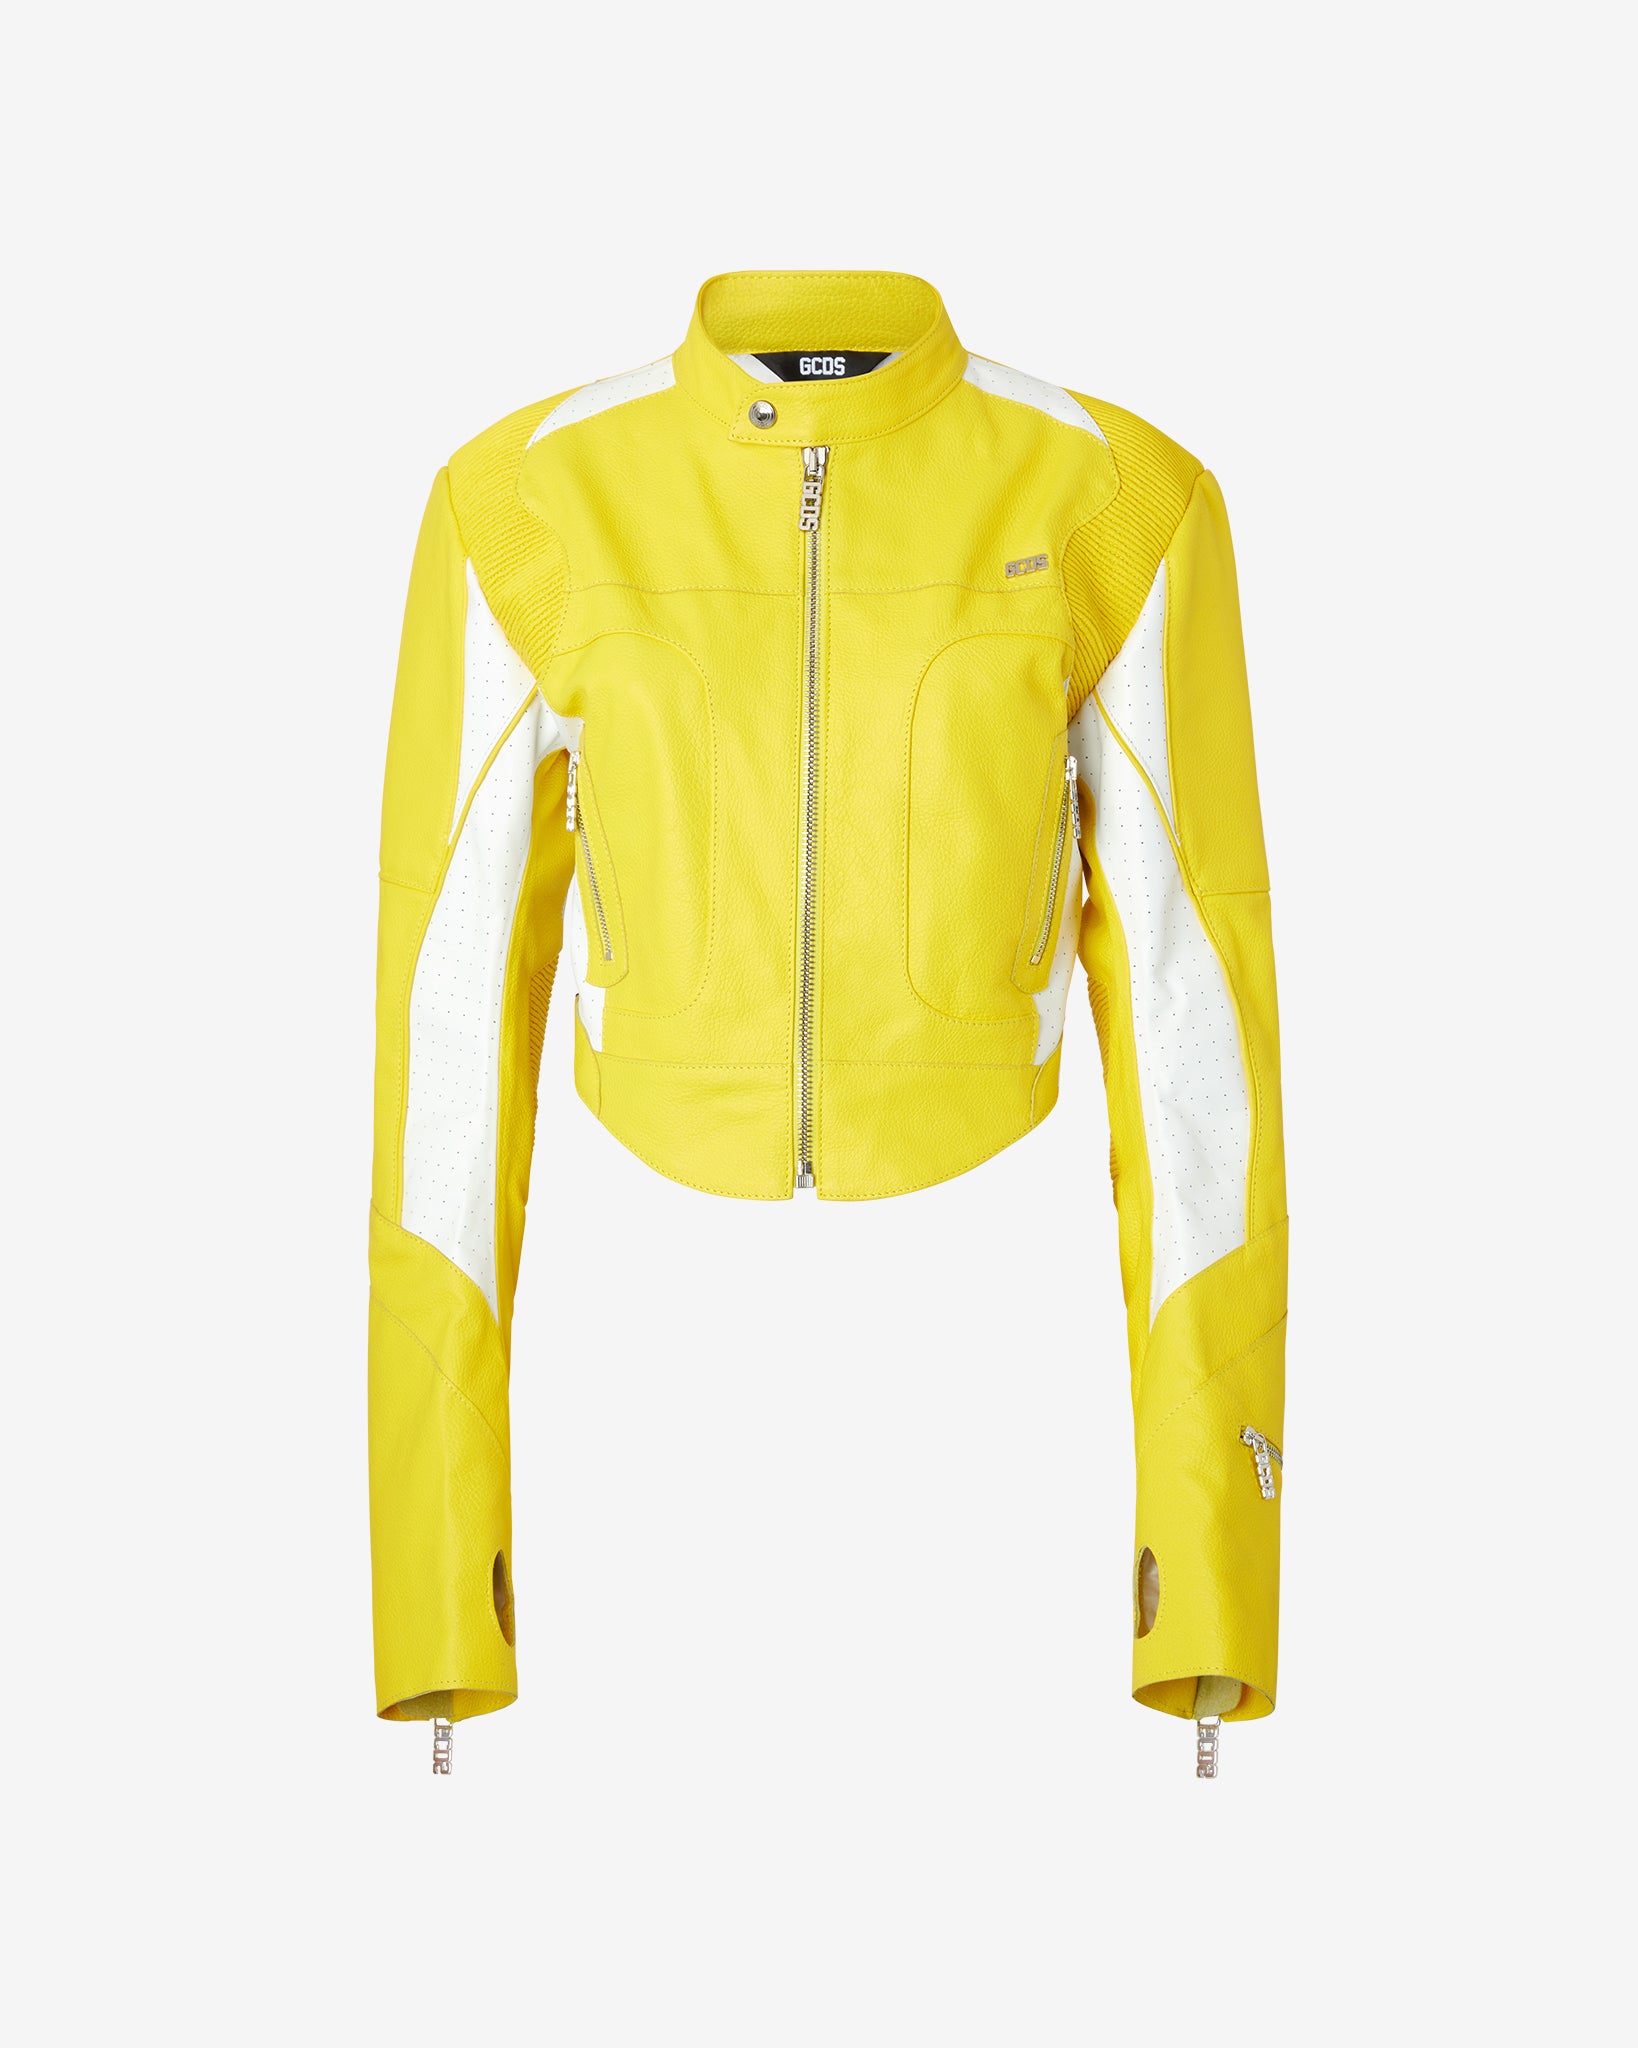 Spongebob Leather Jacket : Women Outerwear Yellow | GCDS